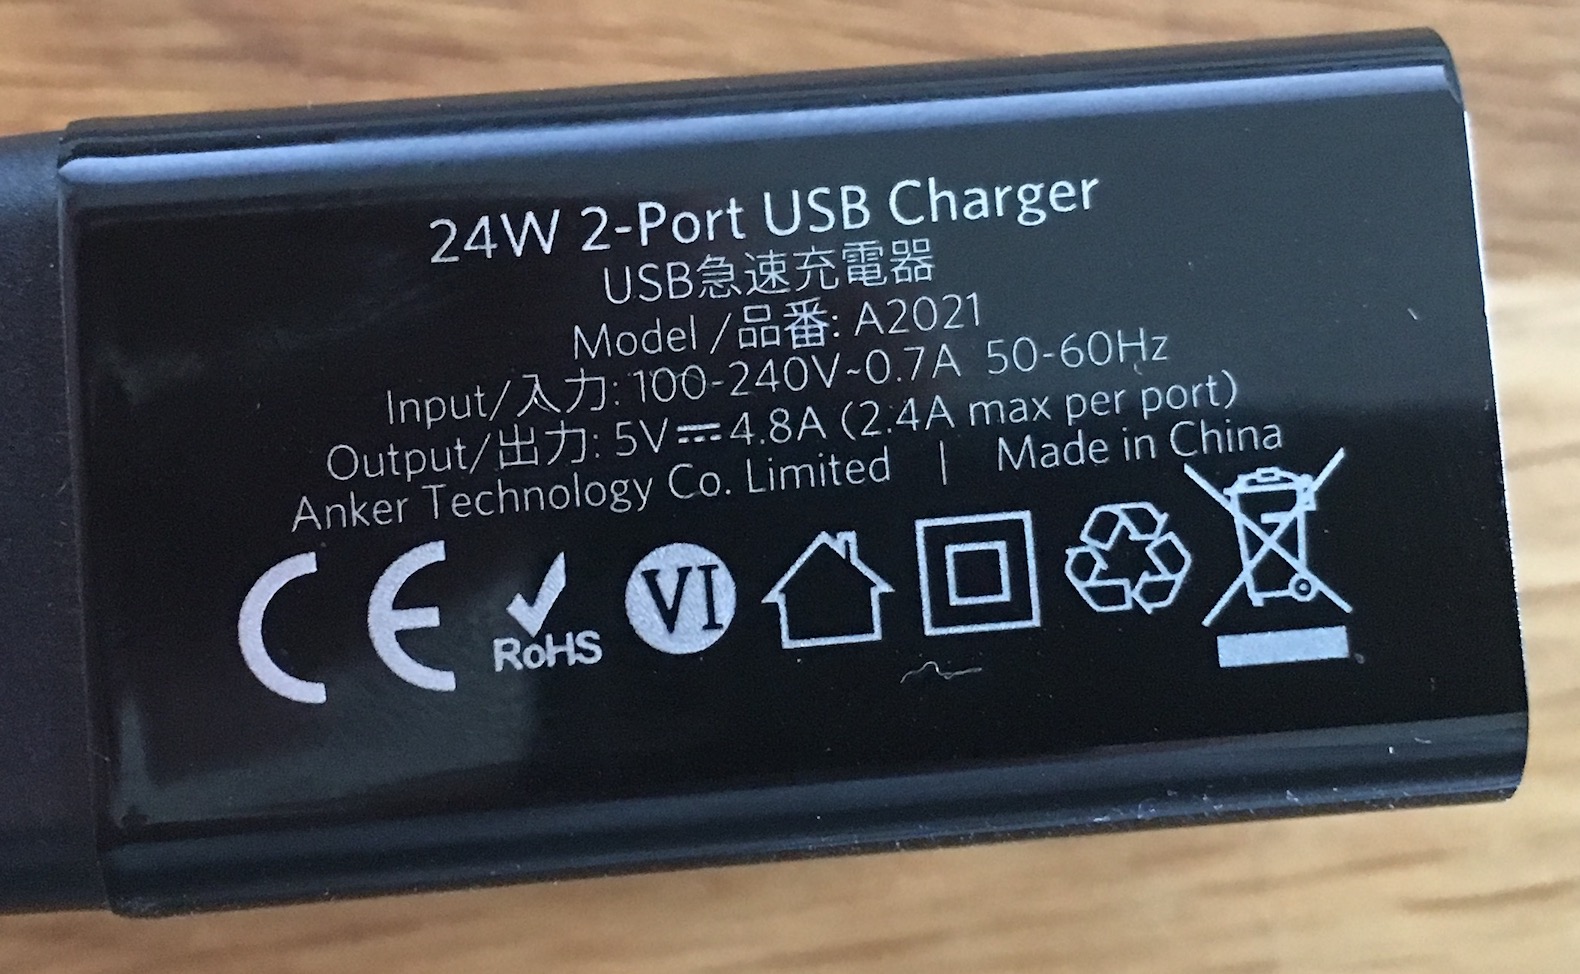 Die Angaben auf dem Netzteil verraten die maximale Leistung: Hier sind es 4,8 Ampere bei 5 Volt. Das Netzteil hat zwei USB-Ports. Pro Port sind also 12 Watt drin – genug für zwei iPads.